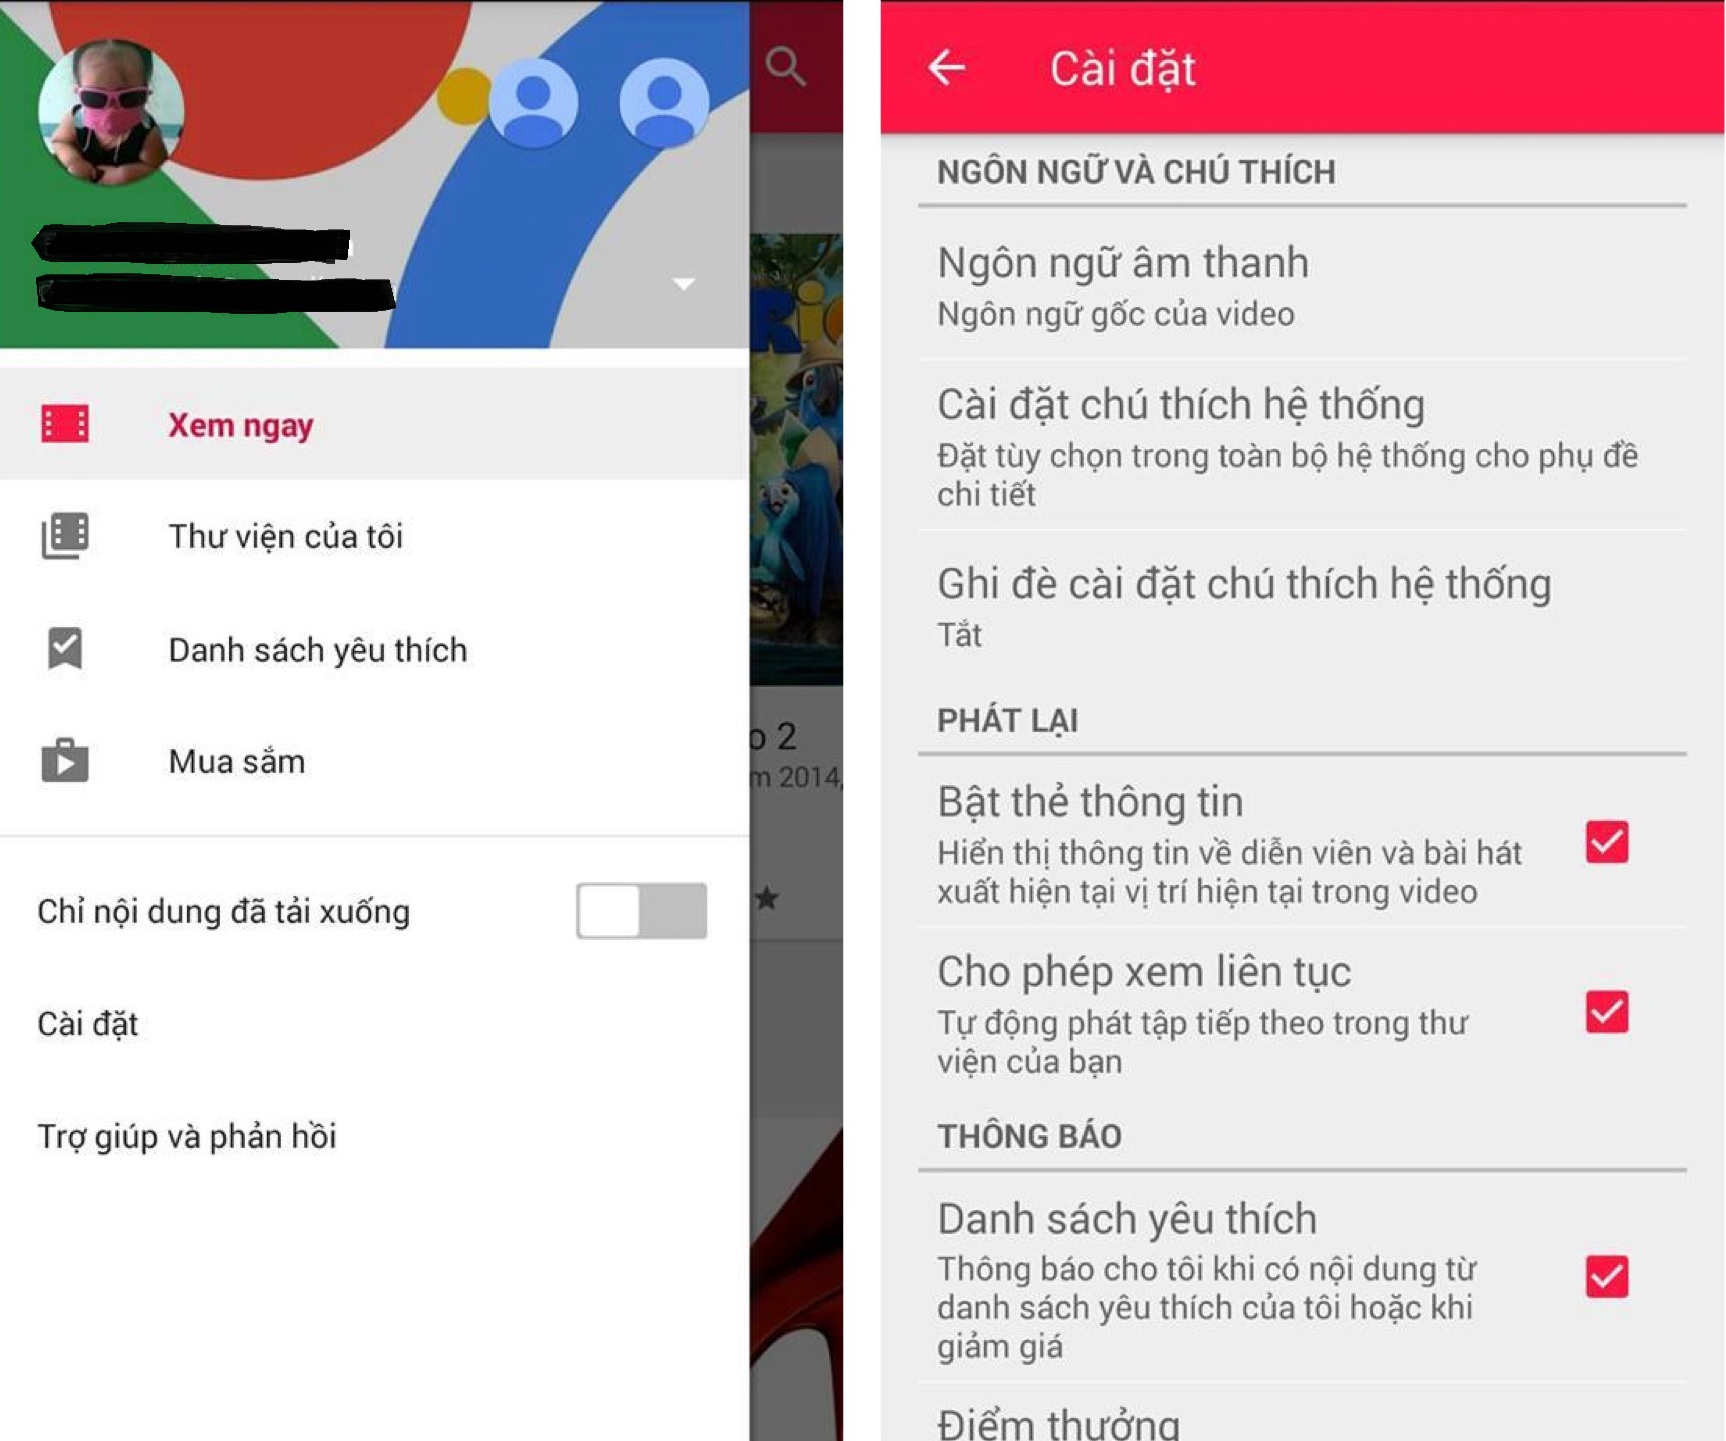 Google Play Movies chính thức hỗ trợ Việt Nam